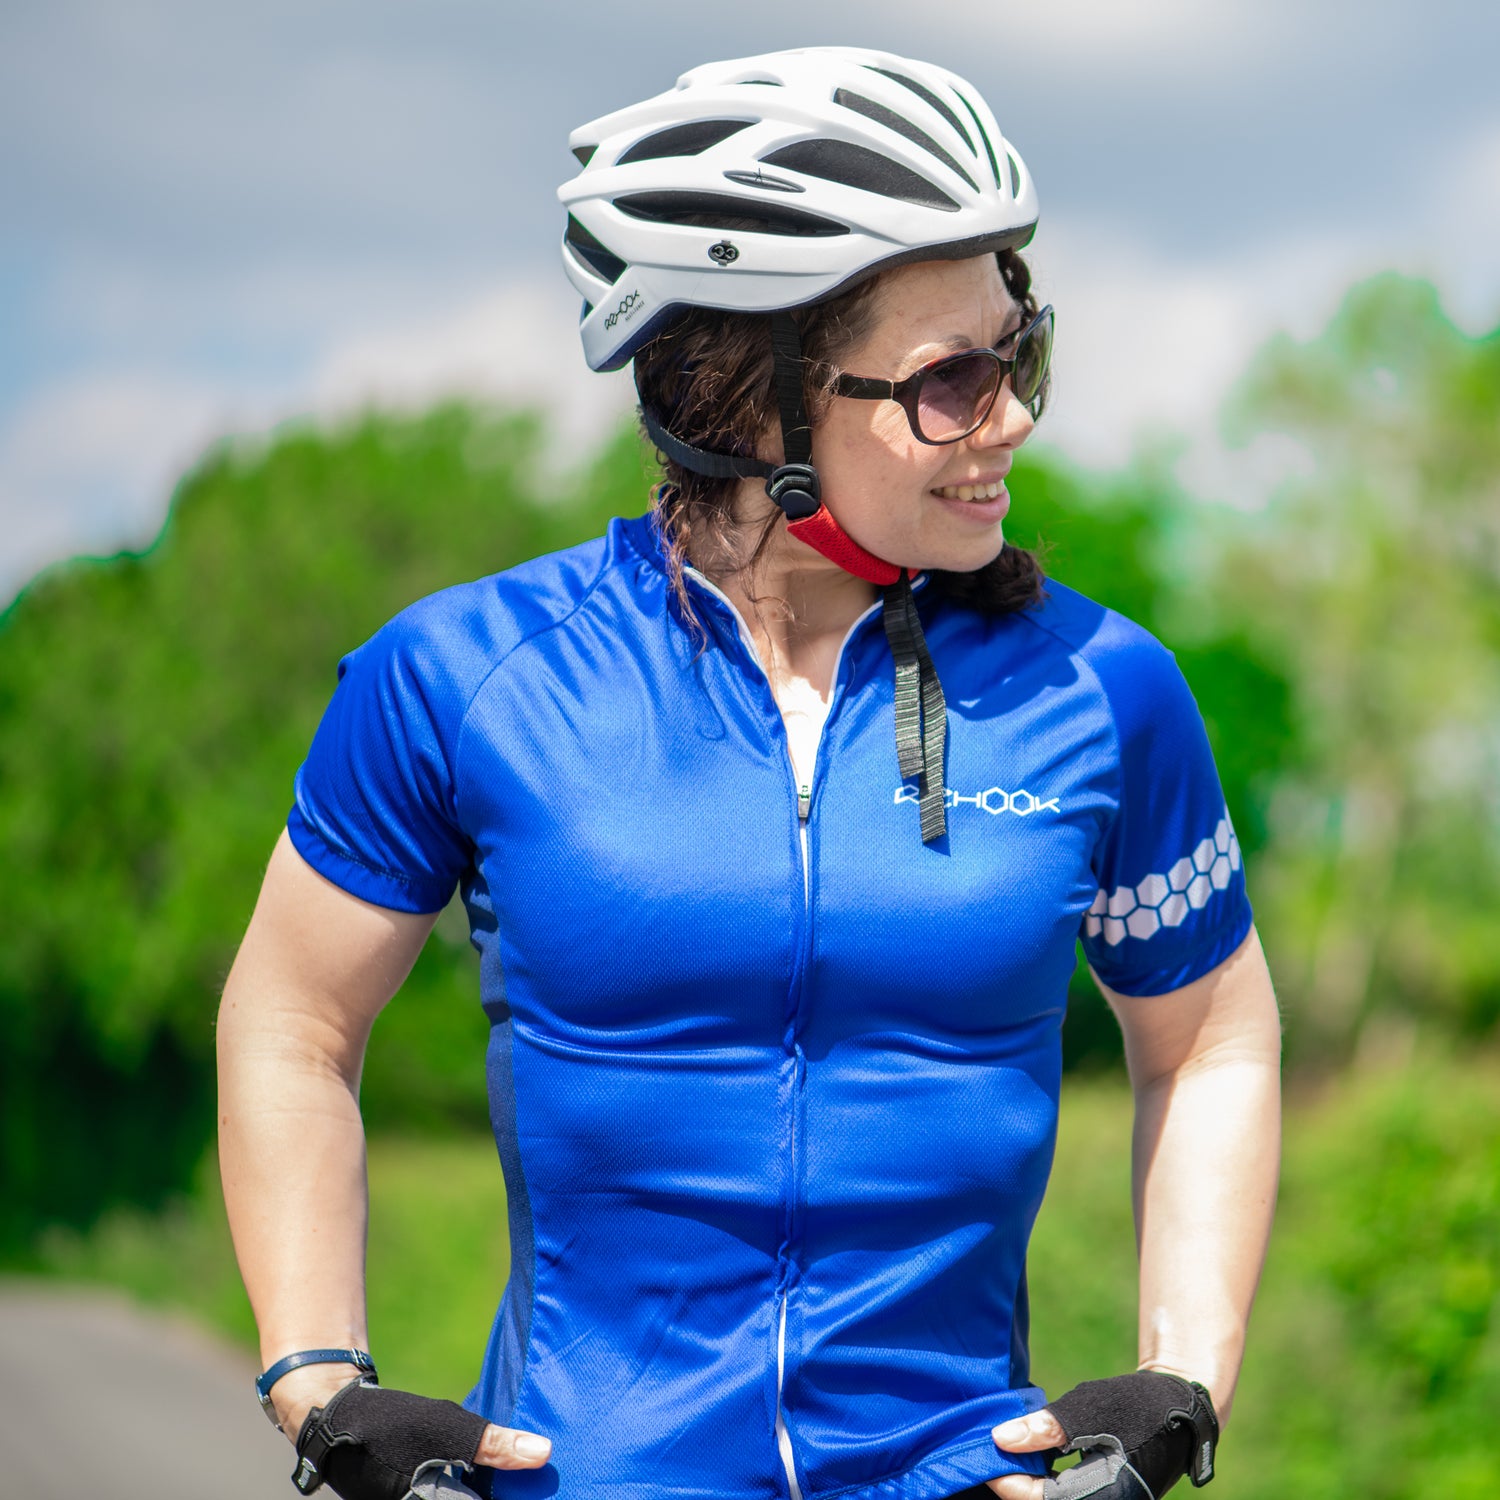 Women's Cycling Apparel